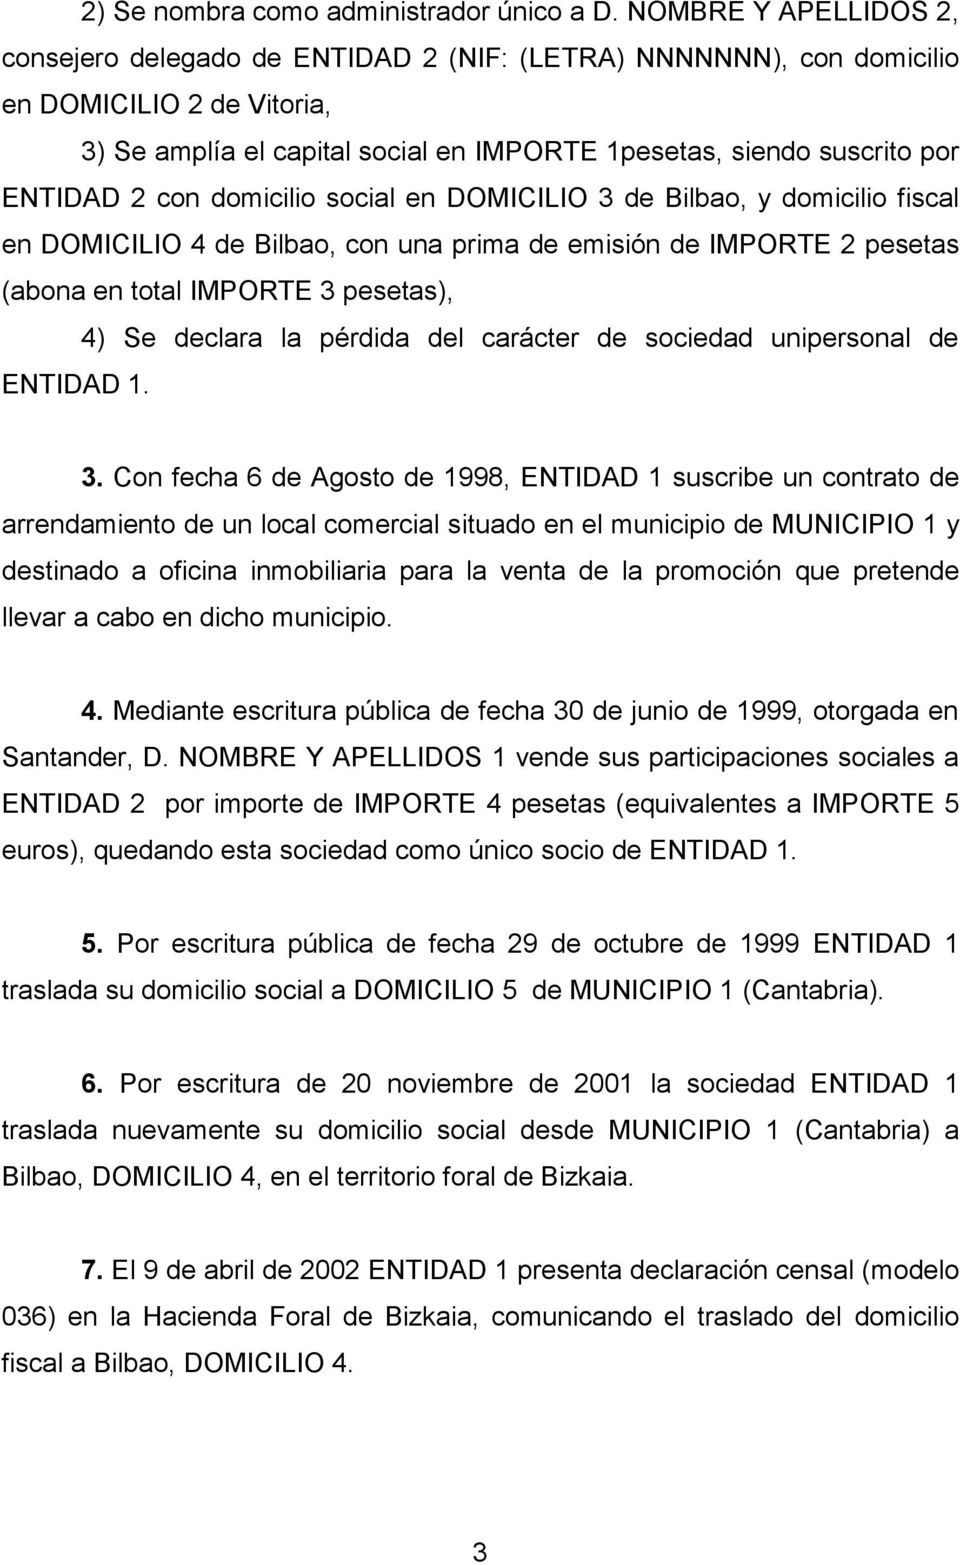 2 con domicilio social en DOMICILIO 3 de Bilbao, y domicilio fiscal en DOMICILIO 4 de Bilbao, con una prima de emisión de IMPORTE 2 pesetas (abona en total IMPORTE 3 pesetas), 4) Se declara la